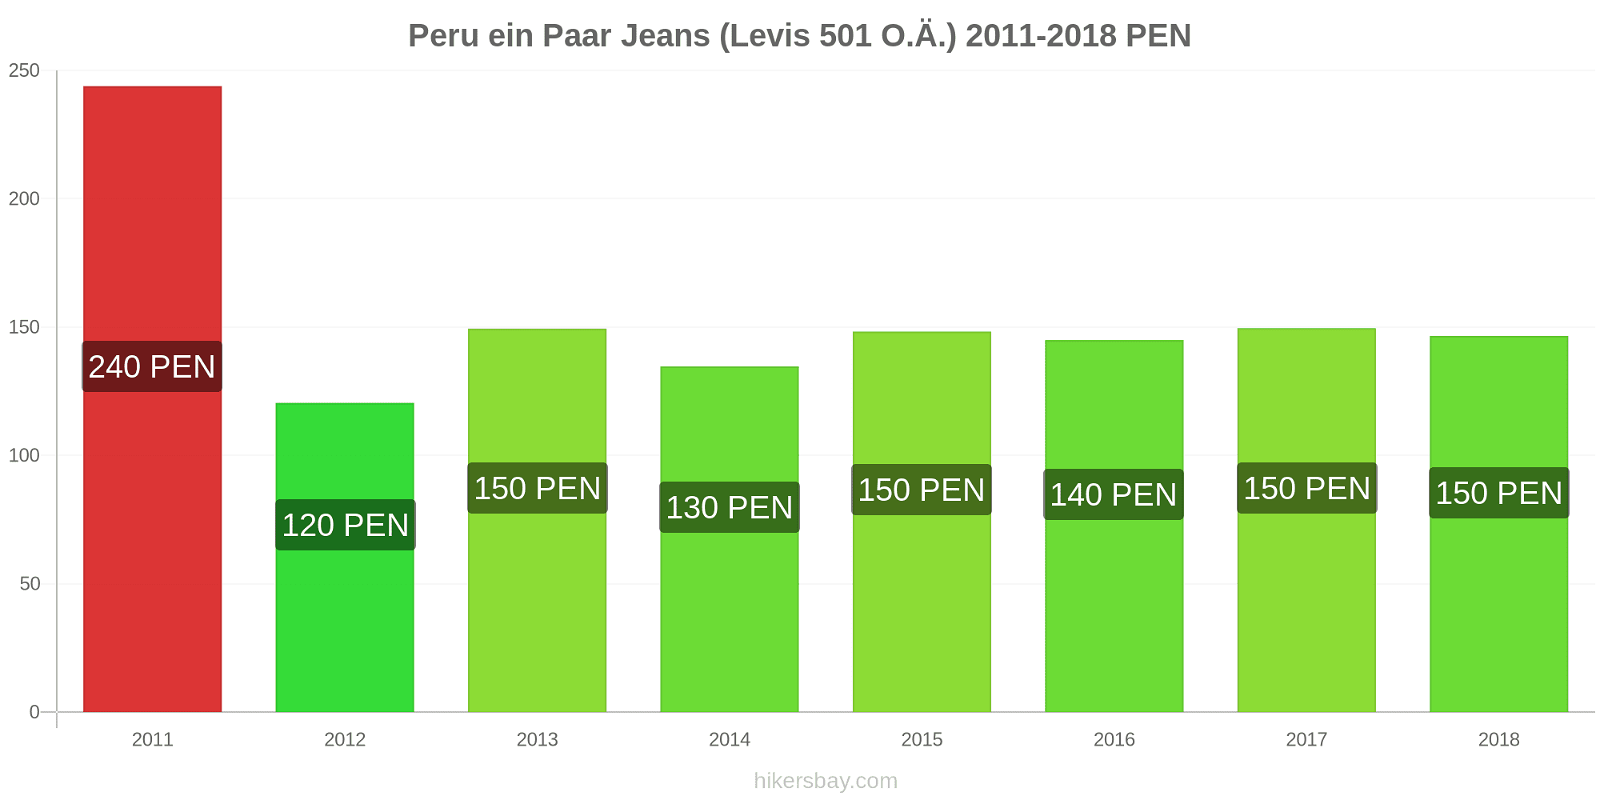 Peru Preisänderungen 1 Paar Jeans (Levis 501 oder ähnlich) hikersbay.com